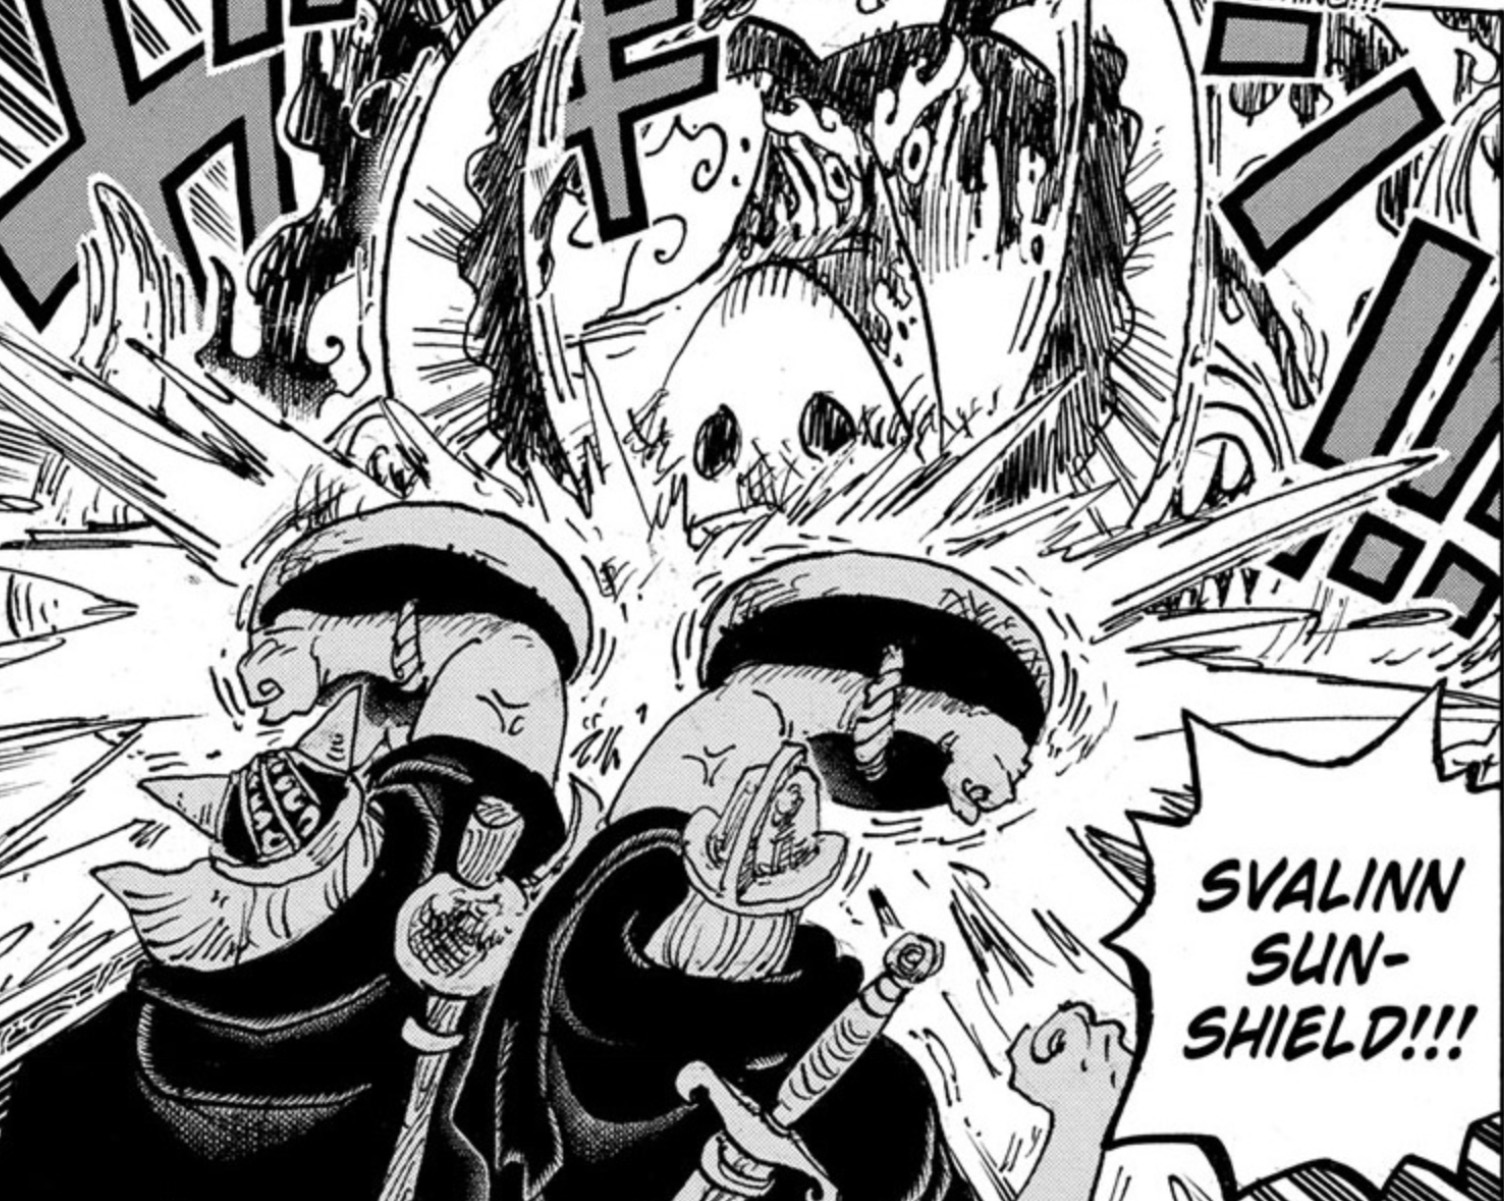 Arte del capítulo 1111 de One Piece